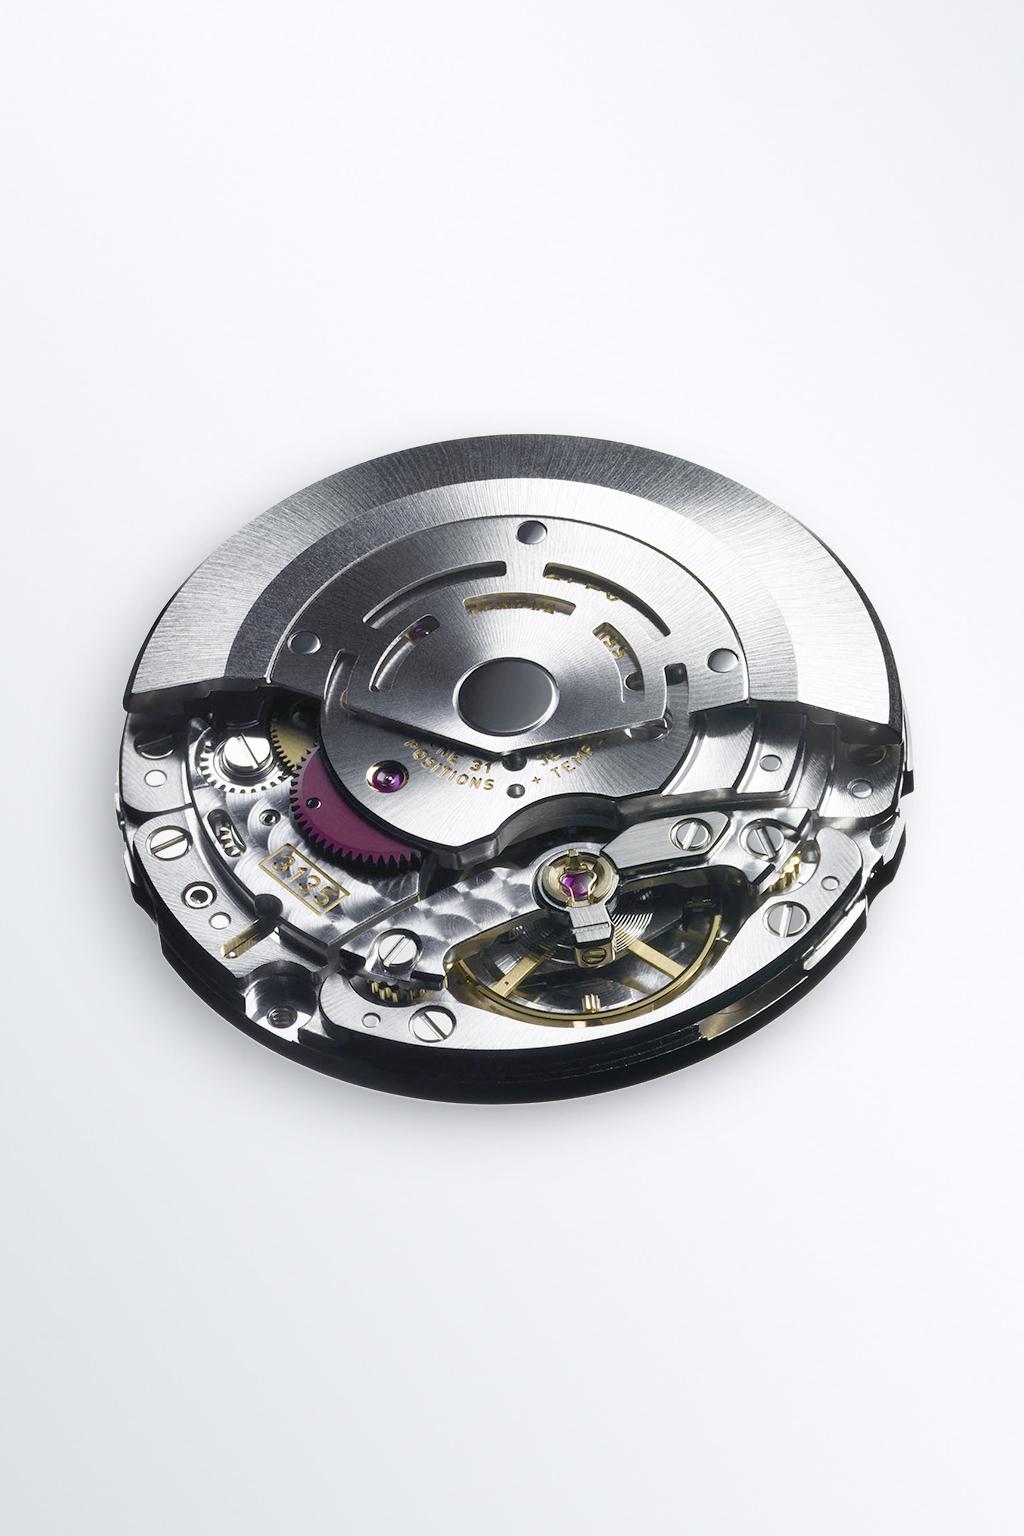 Özellikler 3135 MEKANİZMASI Rolex Deepsea, otomatik kurma özelliğine sahip, tamamen Rolex tarafından geliştirilmiş ve üretilmiş mekanik bir mekanizma olan kalibre 3135 ile donatılmıştır.